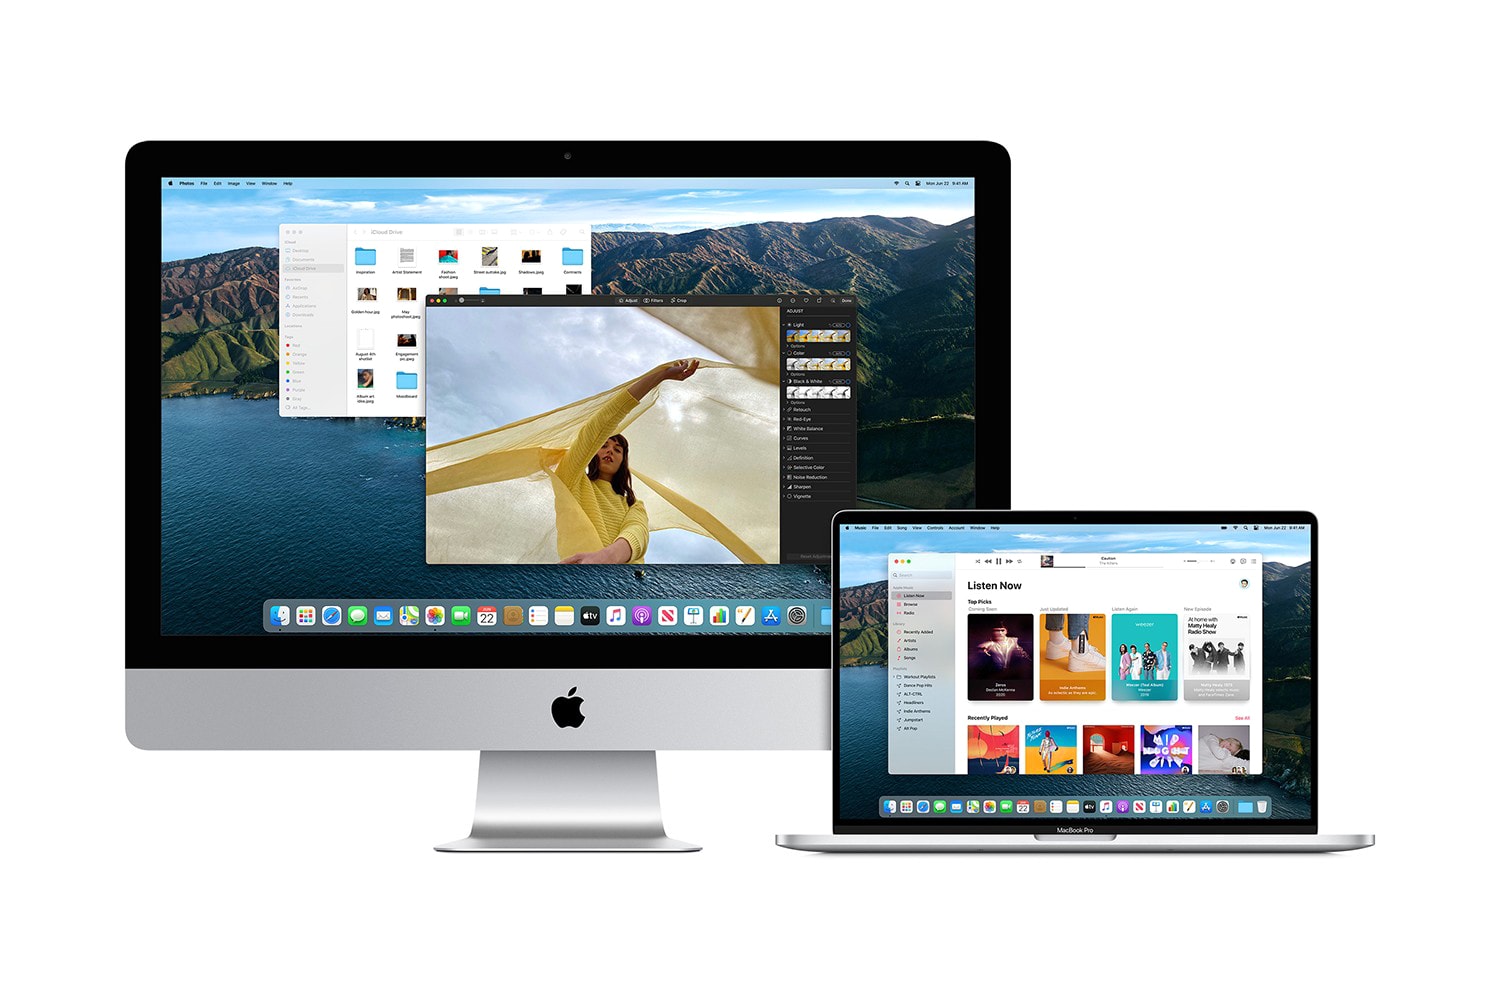 애플의 새로운 운영체제, ‘맥OS 빅 서’ 공식 출시, 맥북 프로, 아이맥